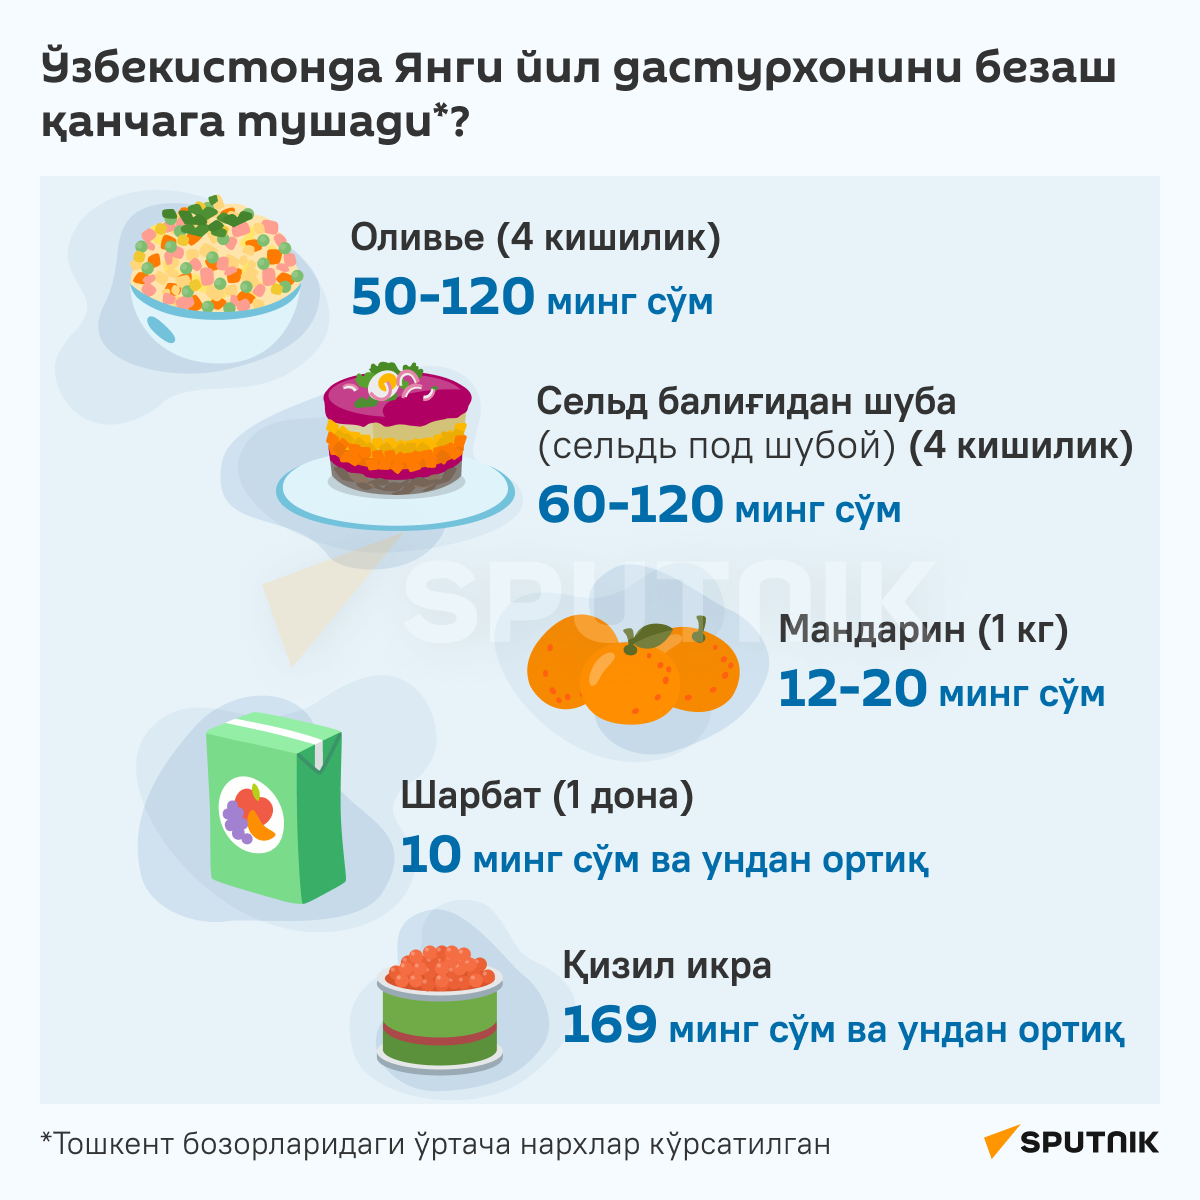 Сколько стоит накрыть новогодний стол в Узбекистане инфографика узб - Sputnik Ўзбекистон